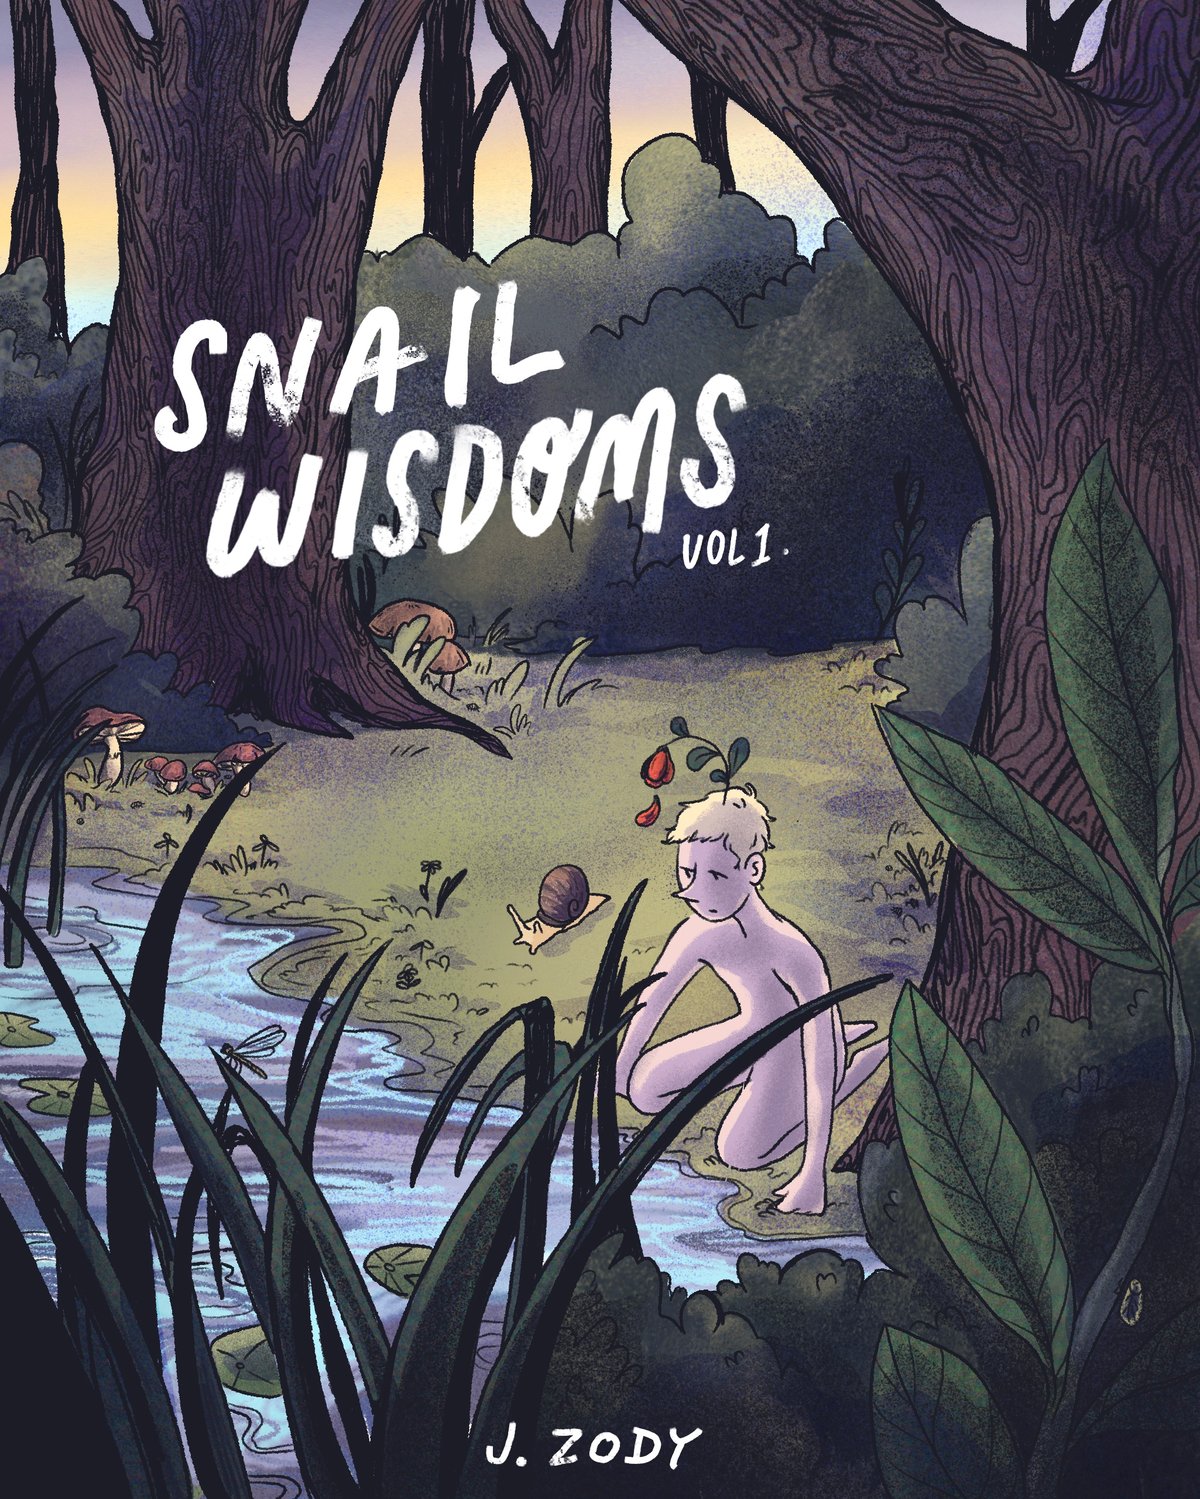 SNAIL WISDOMS (vol. 1) 